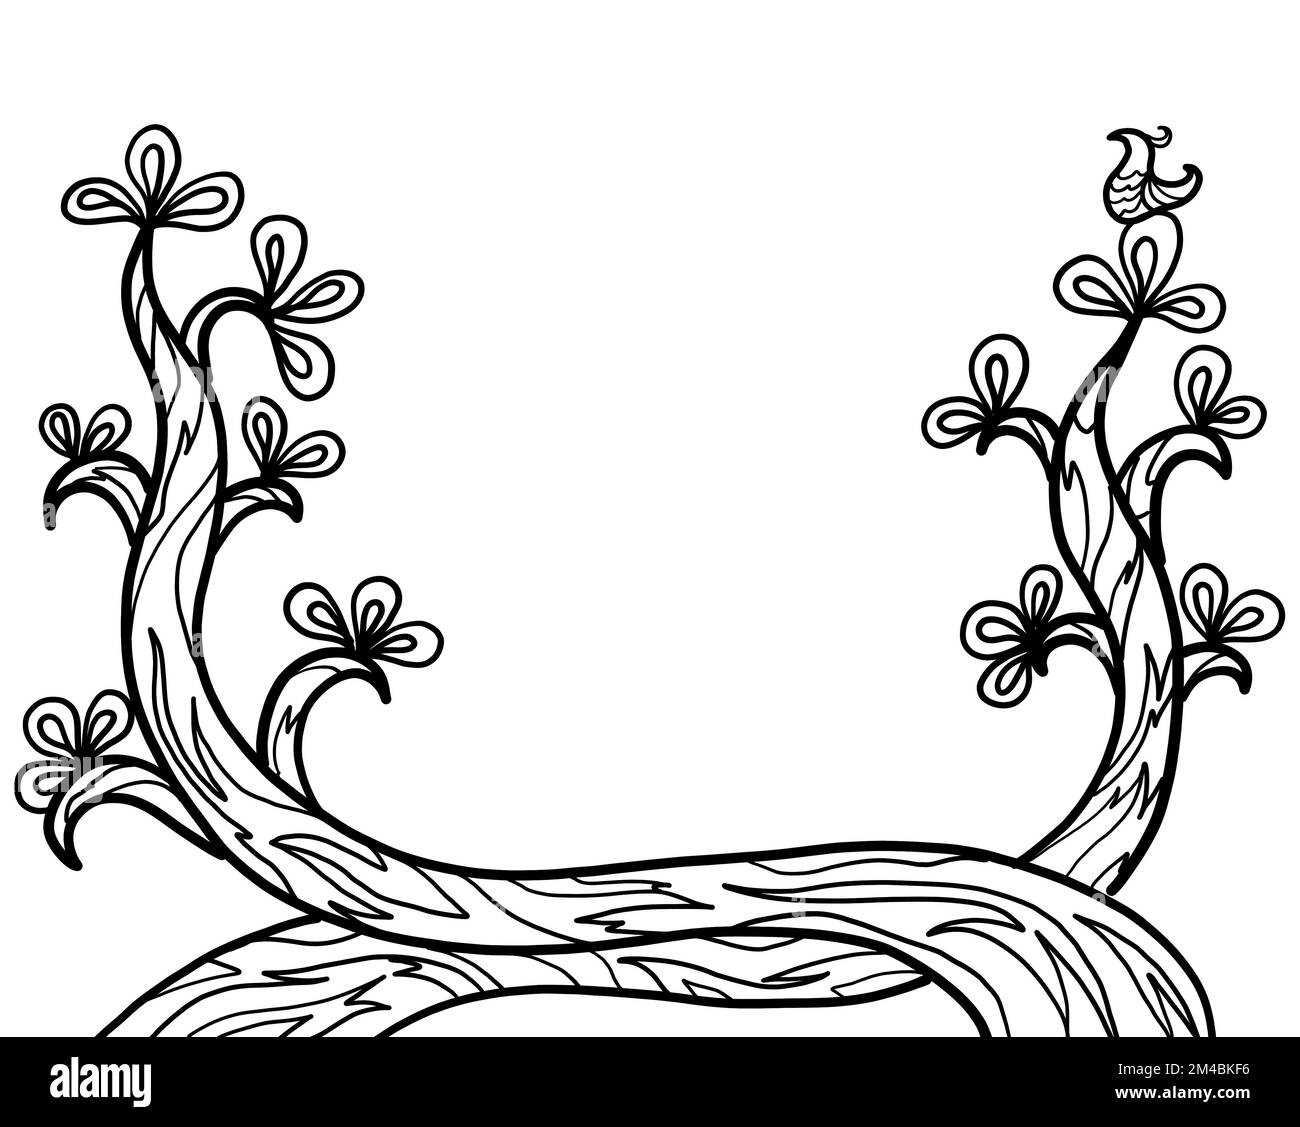 Illustration dessin de la nature de la plante d'arbre sur fond blanc avec un espace de copie. Dessin à la main, design artistique. Banque D'Images